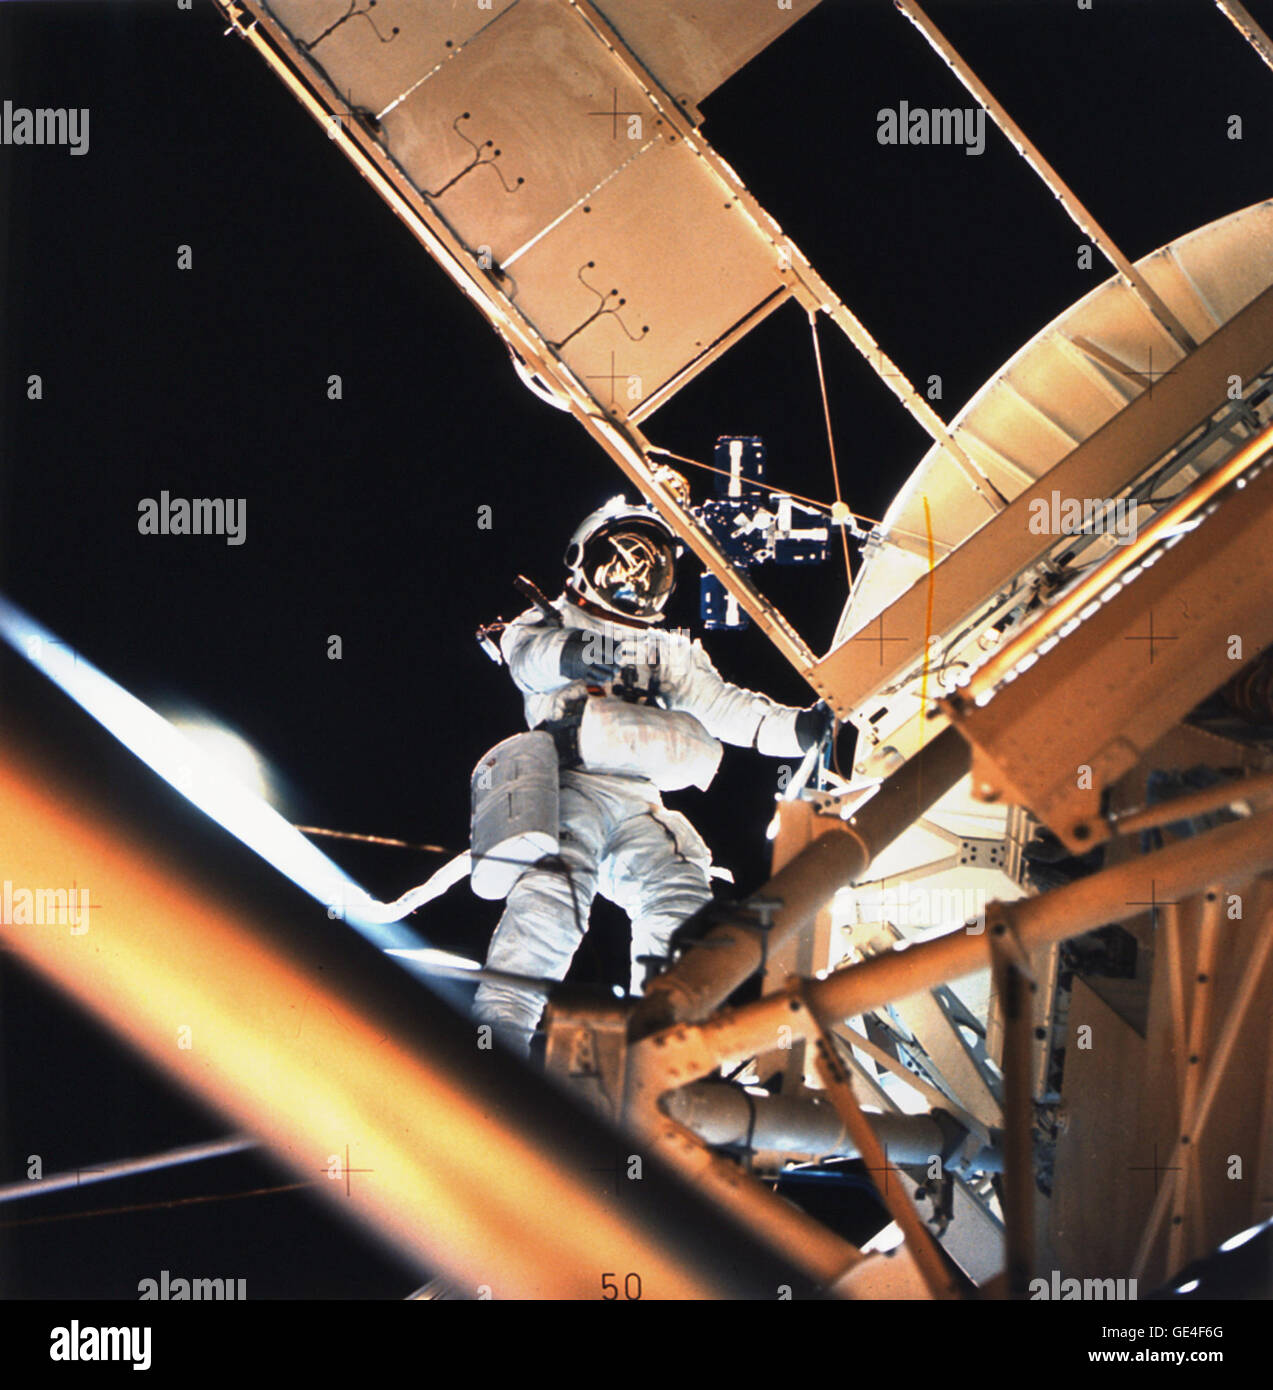 (6 agosto 1973) scienziato-astronauta Owen K. Garriott, Skylab 3 scienza pilota, è visto l'esecuzione di un'attività extravehicular all'Apollo Telescope Mount (ATM) dell'Skylab space station cluster in orbita intorno alla Terra, fotografati con un hand-held 70mm Fotocamera Hasselblad. Garriott aveva appena distribuito il Skylab la raccolta di particelle S149 esperimento. L'esperimento è montato su uno degli ATM pannelli solari. Lo scopo del S149 esperimento era di raccogliere il materiale interplanetario di particelle di polvere su superfici preparate adatto per studiare i fenomeni di impatto. In precedenza durante la EVA Garriott assistere Foto Stock